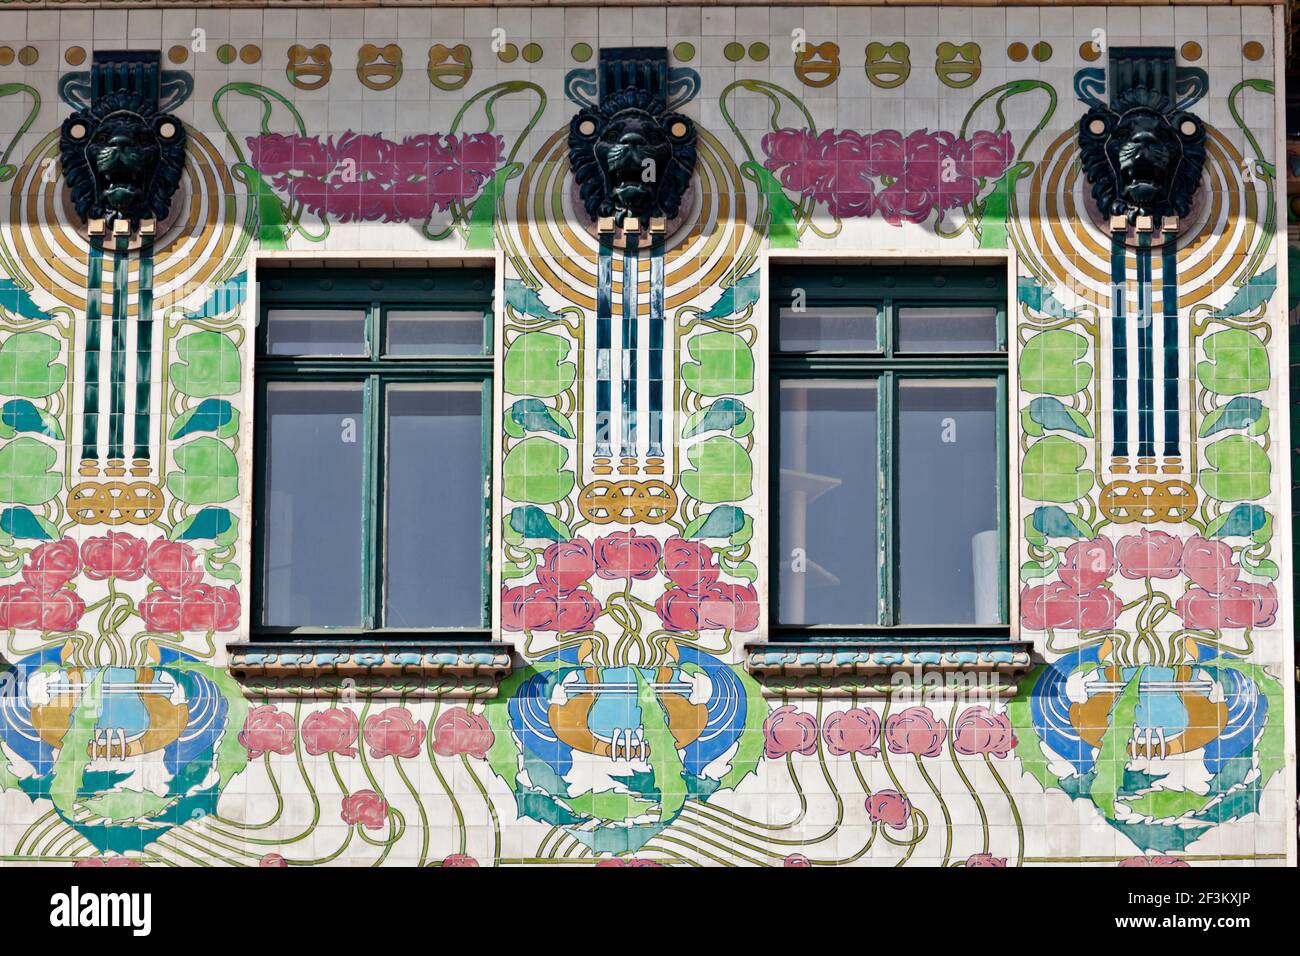 Façade de Majolikahaus majolique) chambre (au n°40 Linke Wienzeile (1899), Vienne, Autriche Banque D'Images